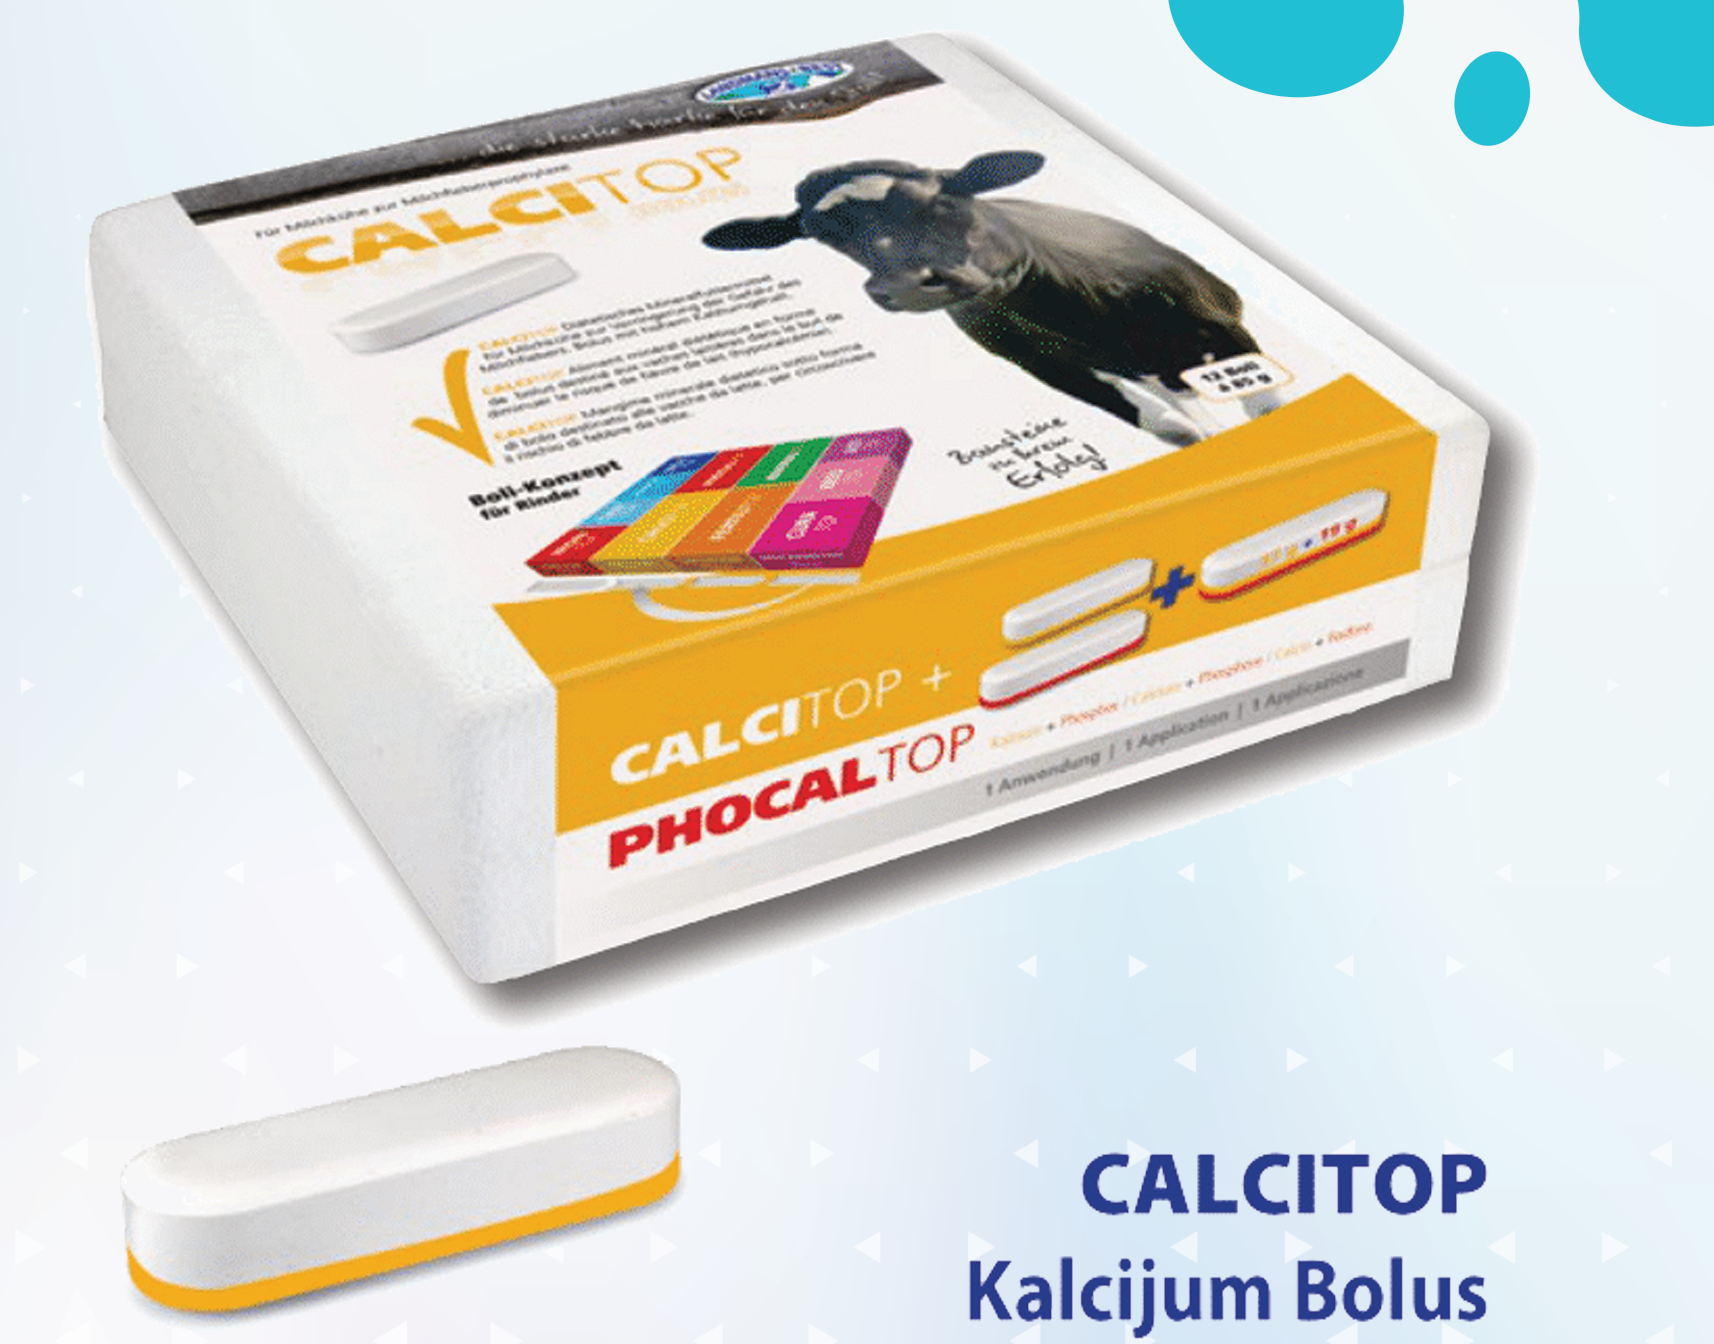 Calcitop Kalcijum Bolus